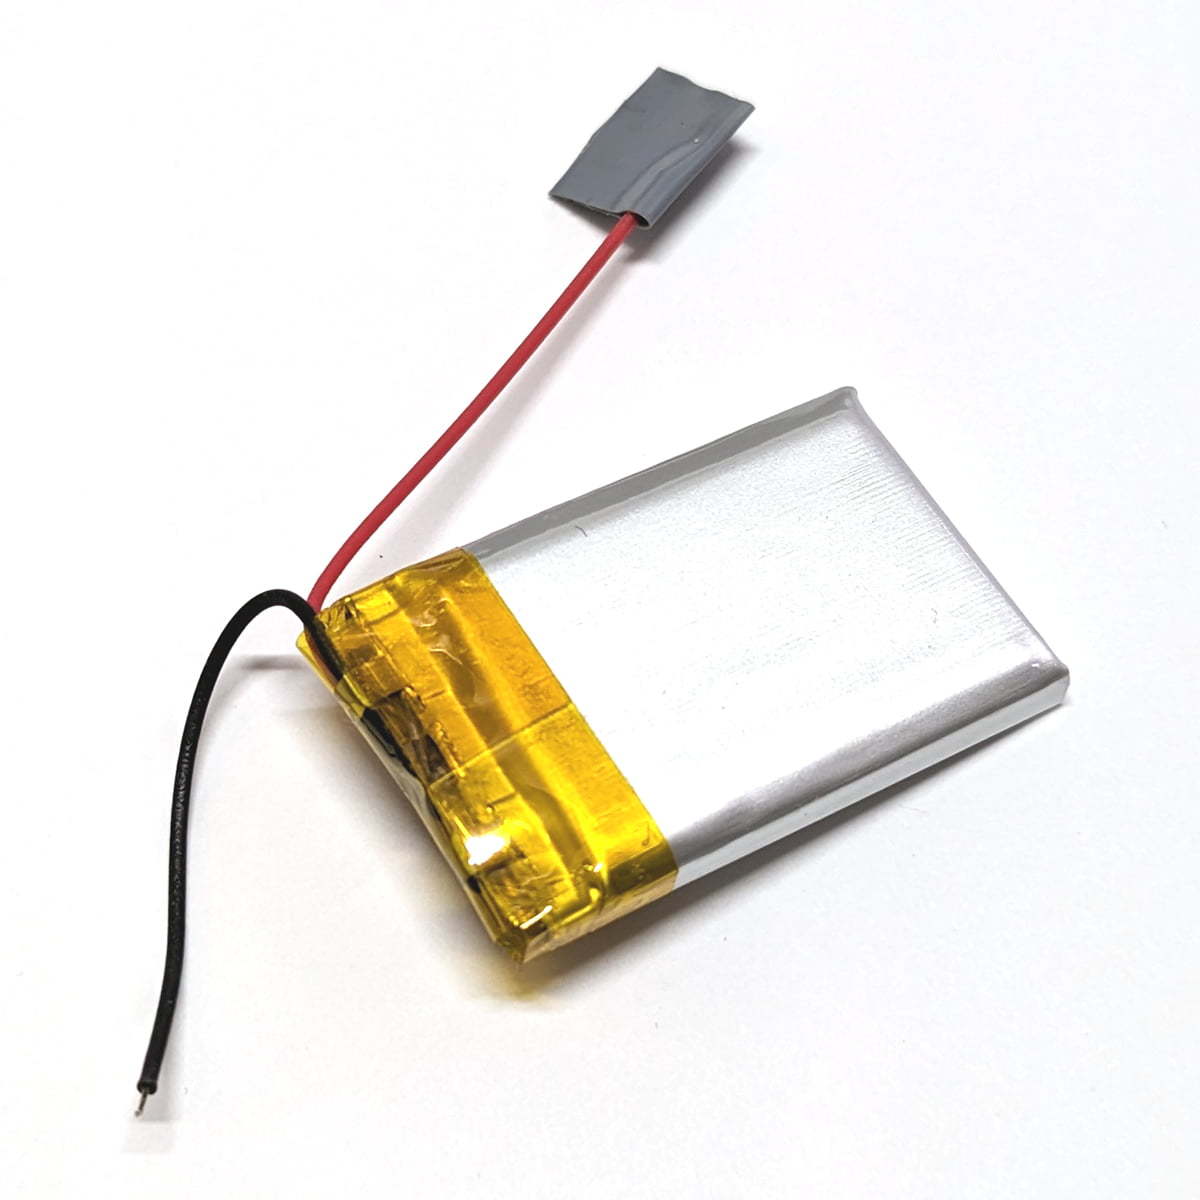 リポバッテリー 402030 200mah 3.7v 1個 充電式 リチウムポリマー 電池 リポ バッテリー Lipo_画像2